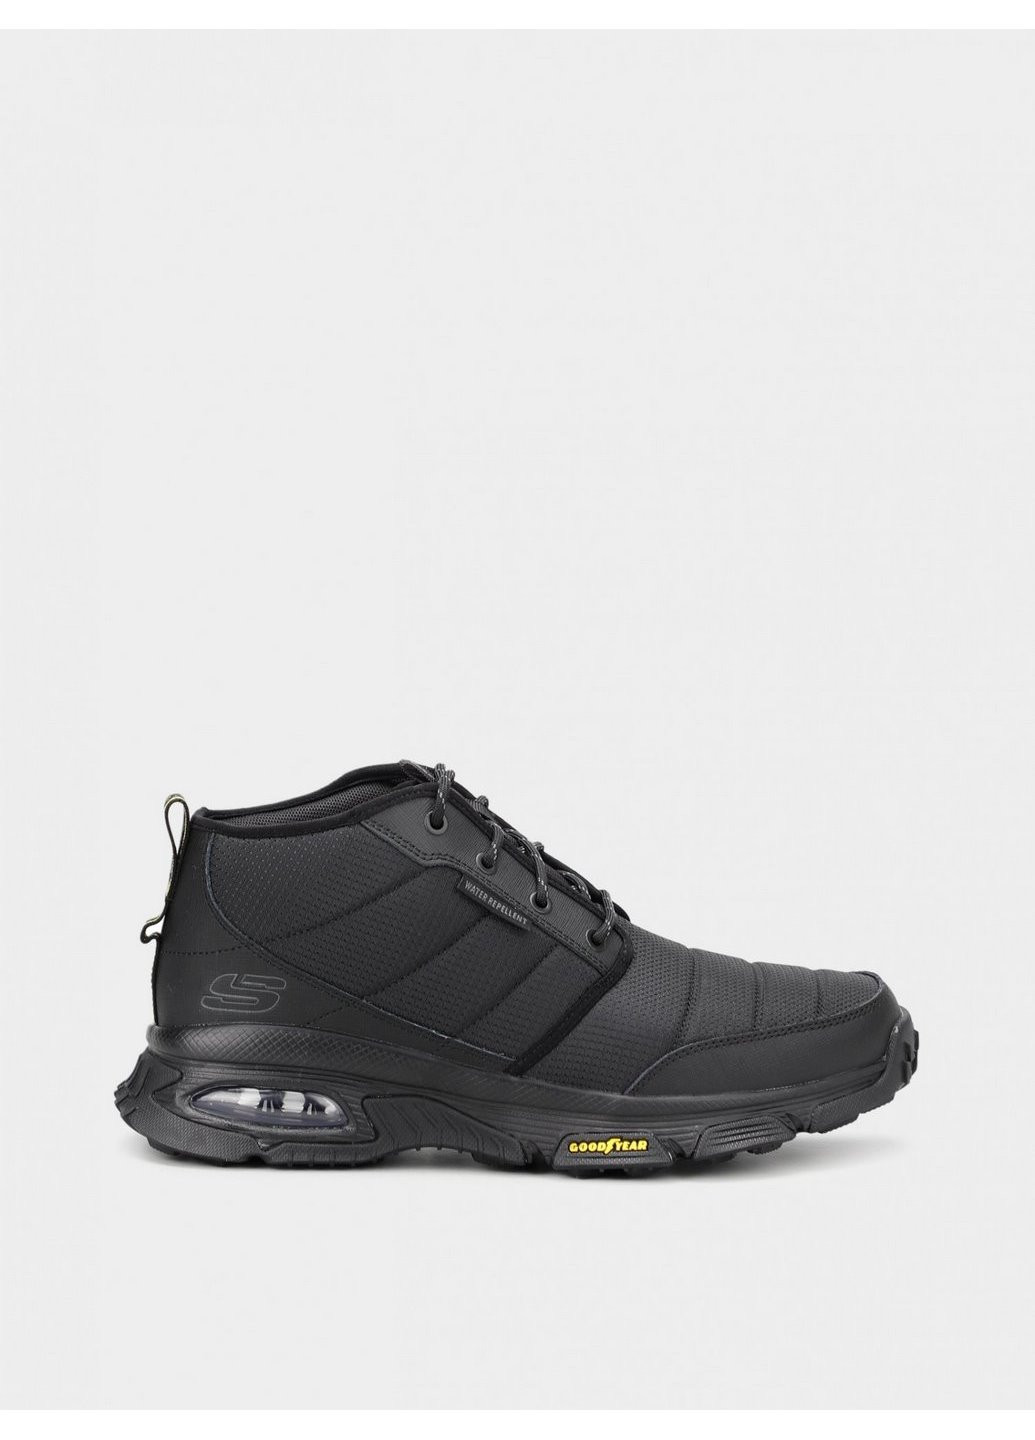 Черные осенние ботинки мужские 237317bbk Skechers